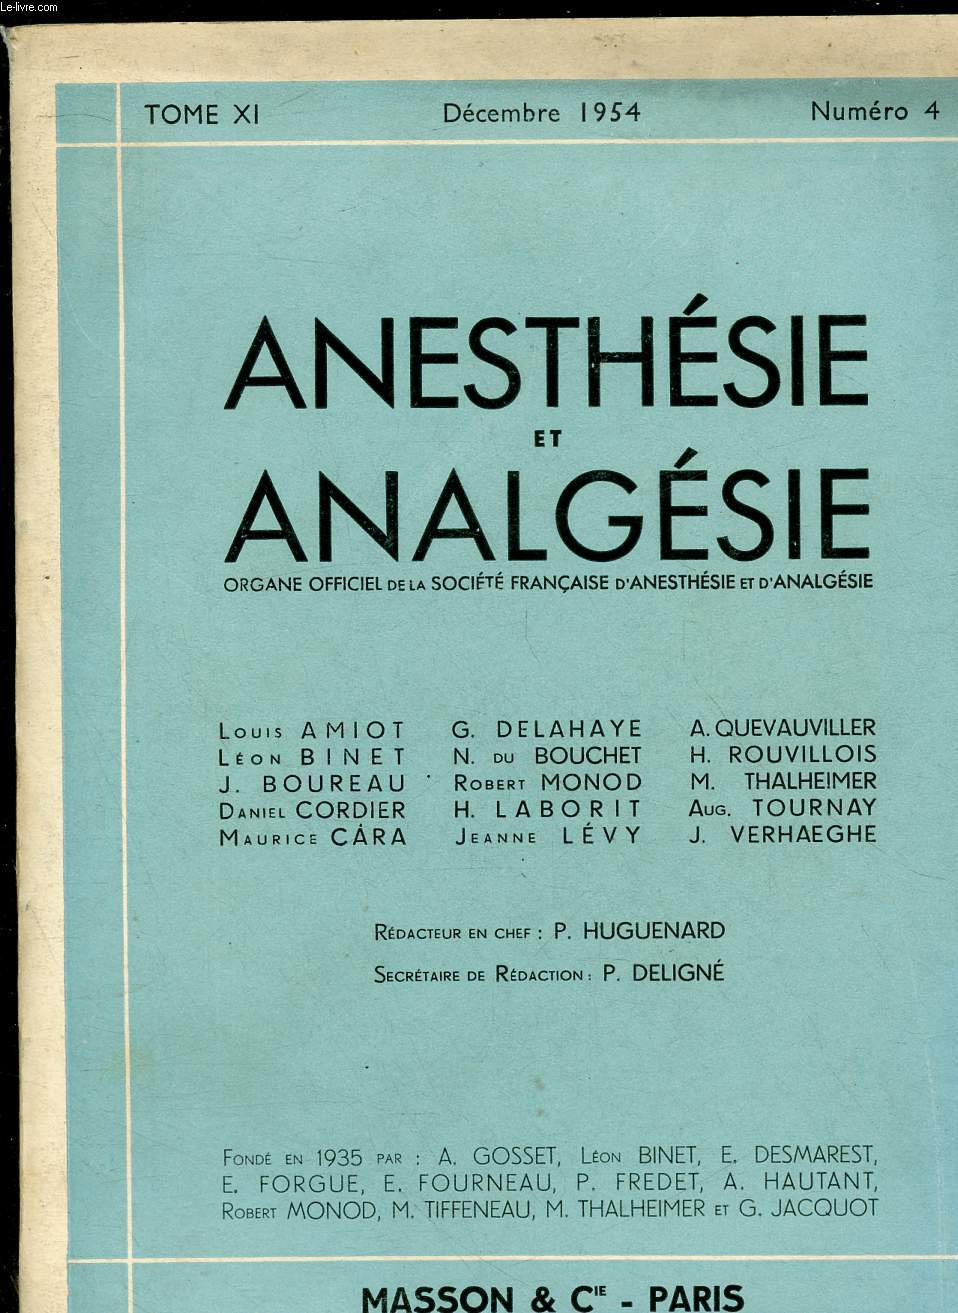 ANESTHESIE ANALGESIE REANIMATION - Organe officiel de la St franaise d'anesthsie et d'analgsie - TOME XI - N4 - DEC 1954 : Le mtabolisme basal sous hibernothrapie (rflxions sur 4 observations), par L. Campan et A. Riser ,etc